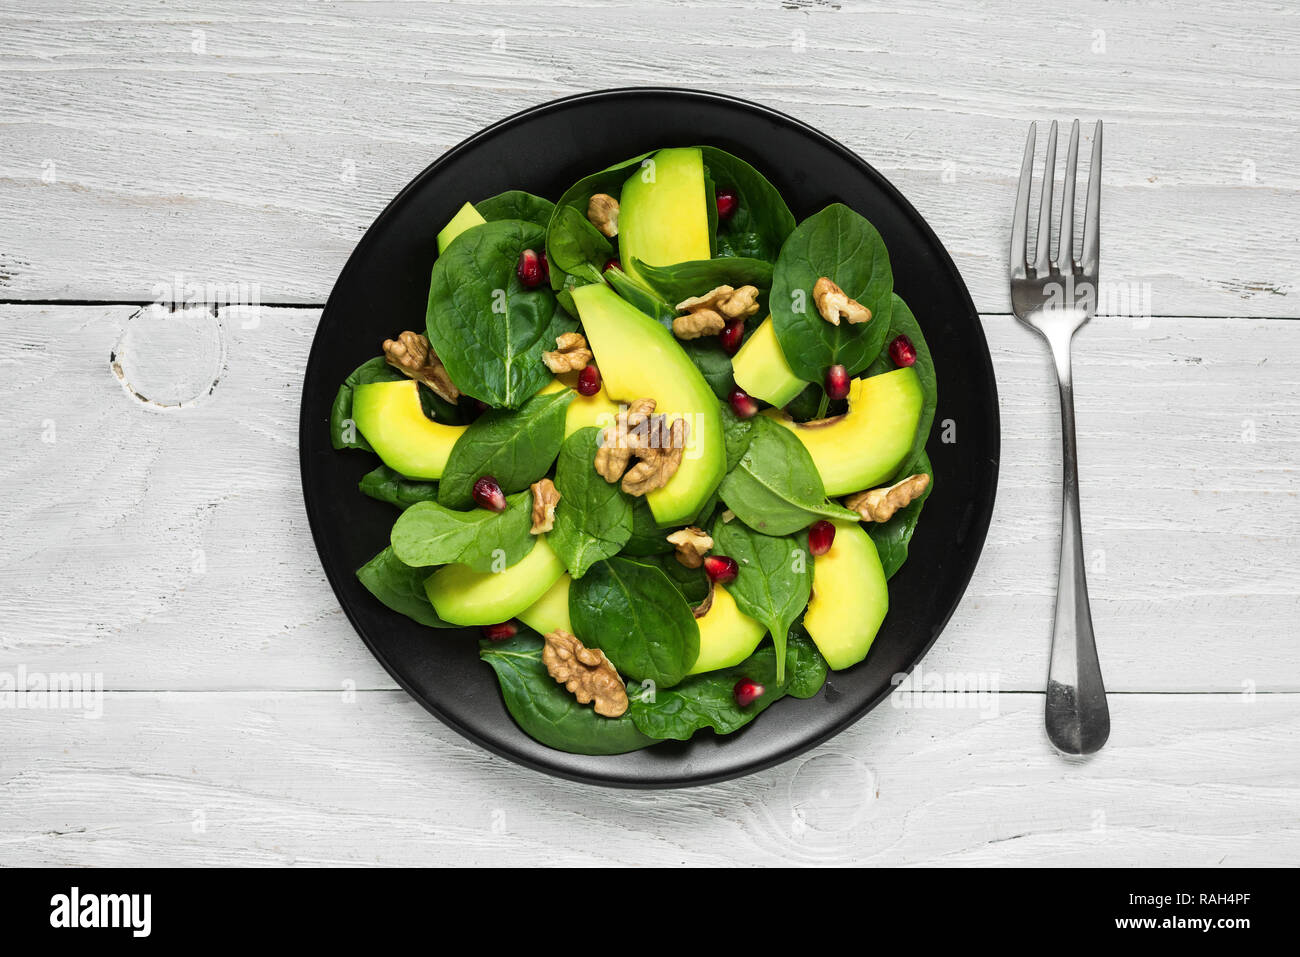 Vegano con insalata di avocado, spinaci, melograno e noci in lamiera nera con la forcella. Il cibo sano. vista superiore Foto Stock